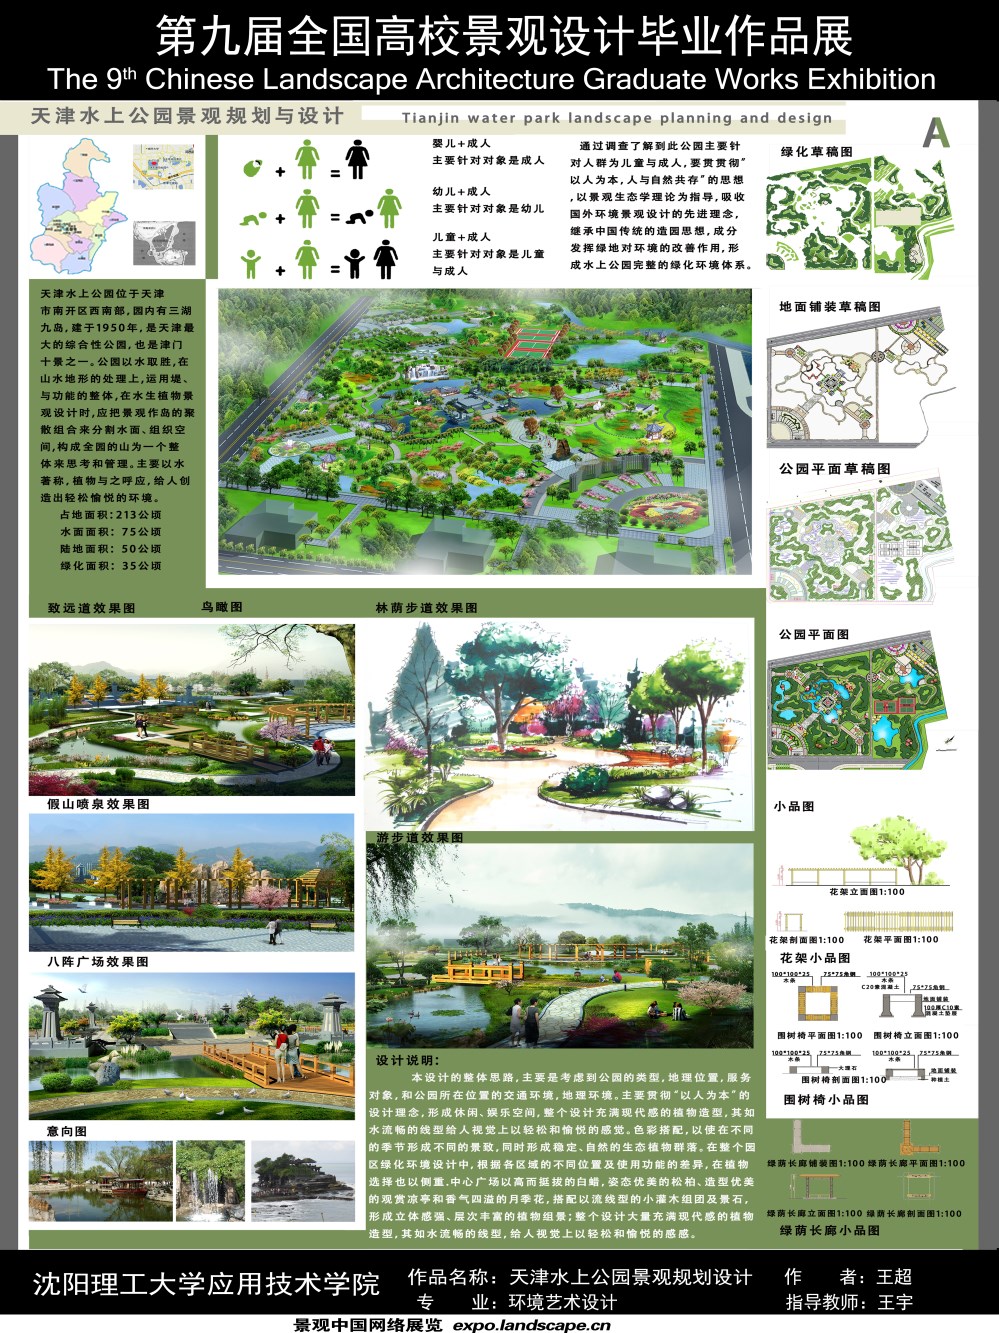 天津水上公园景观规划设计-2